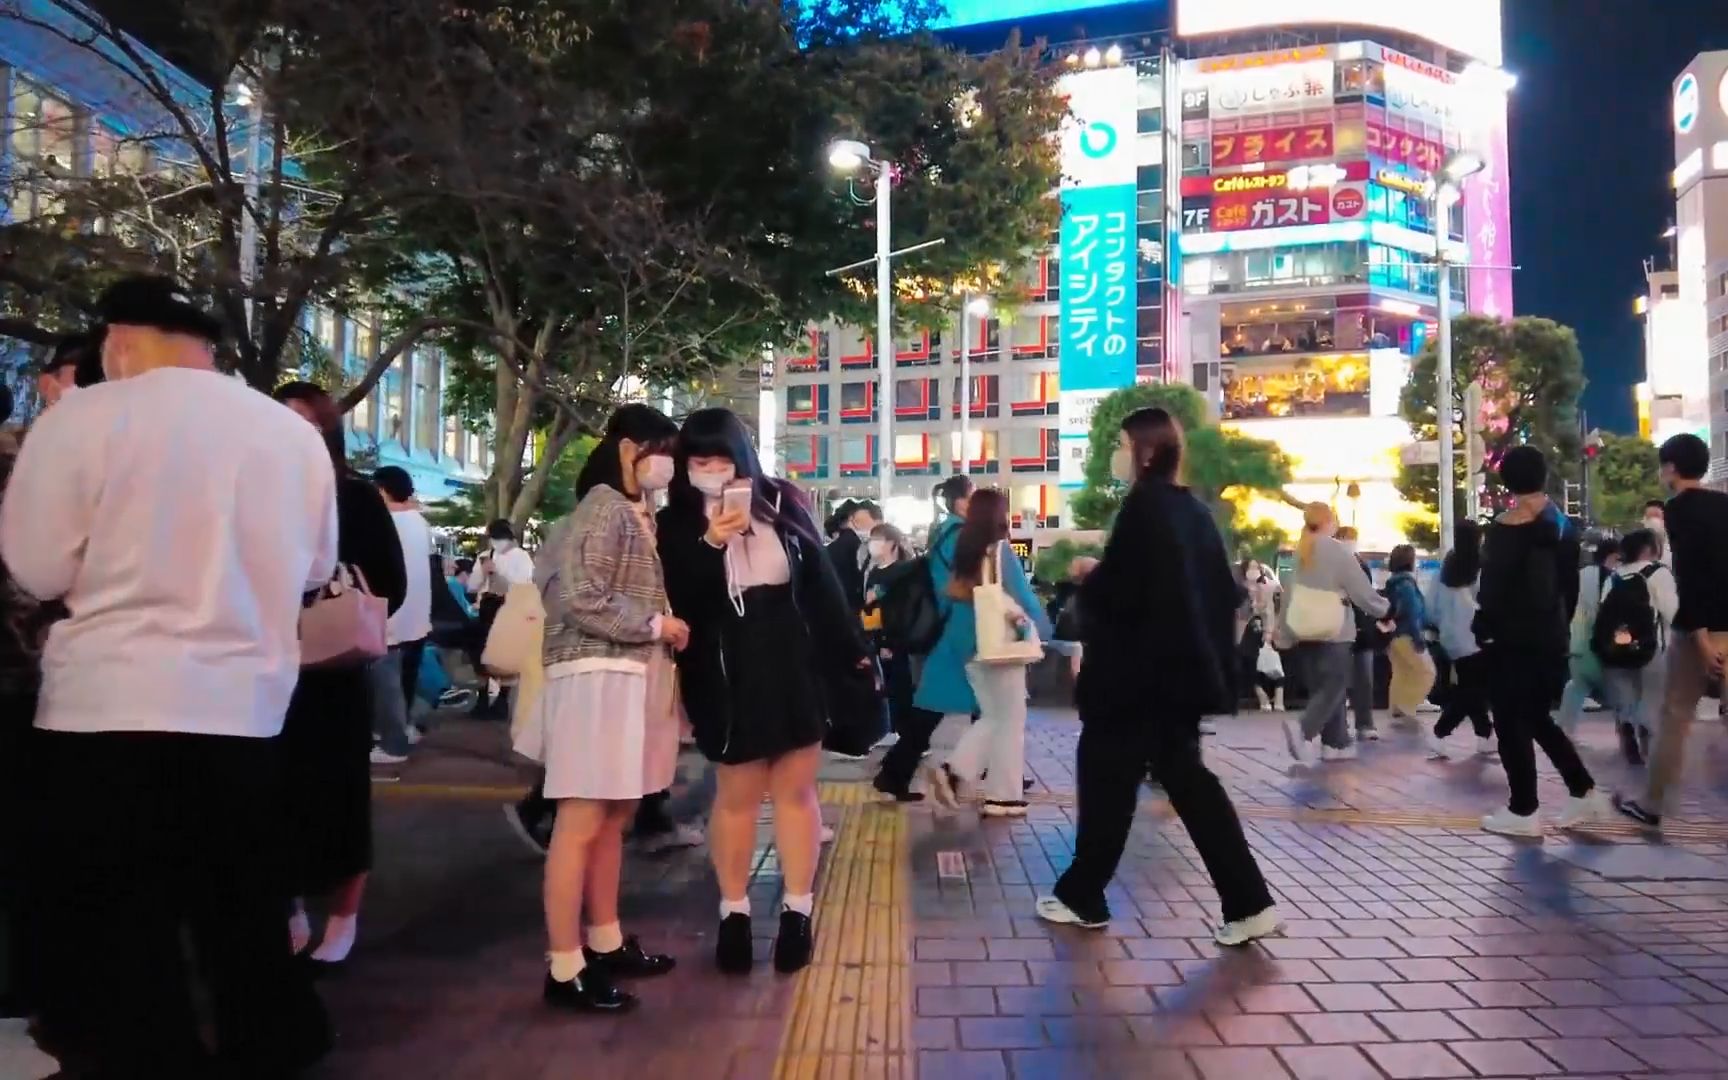 疫情下漫步东京涩谷街头,让我们看看这里的街头现状呀!